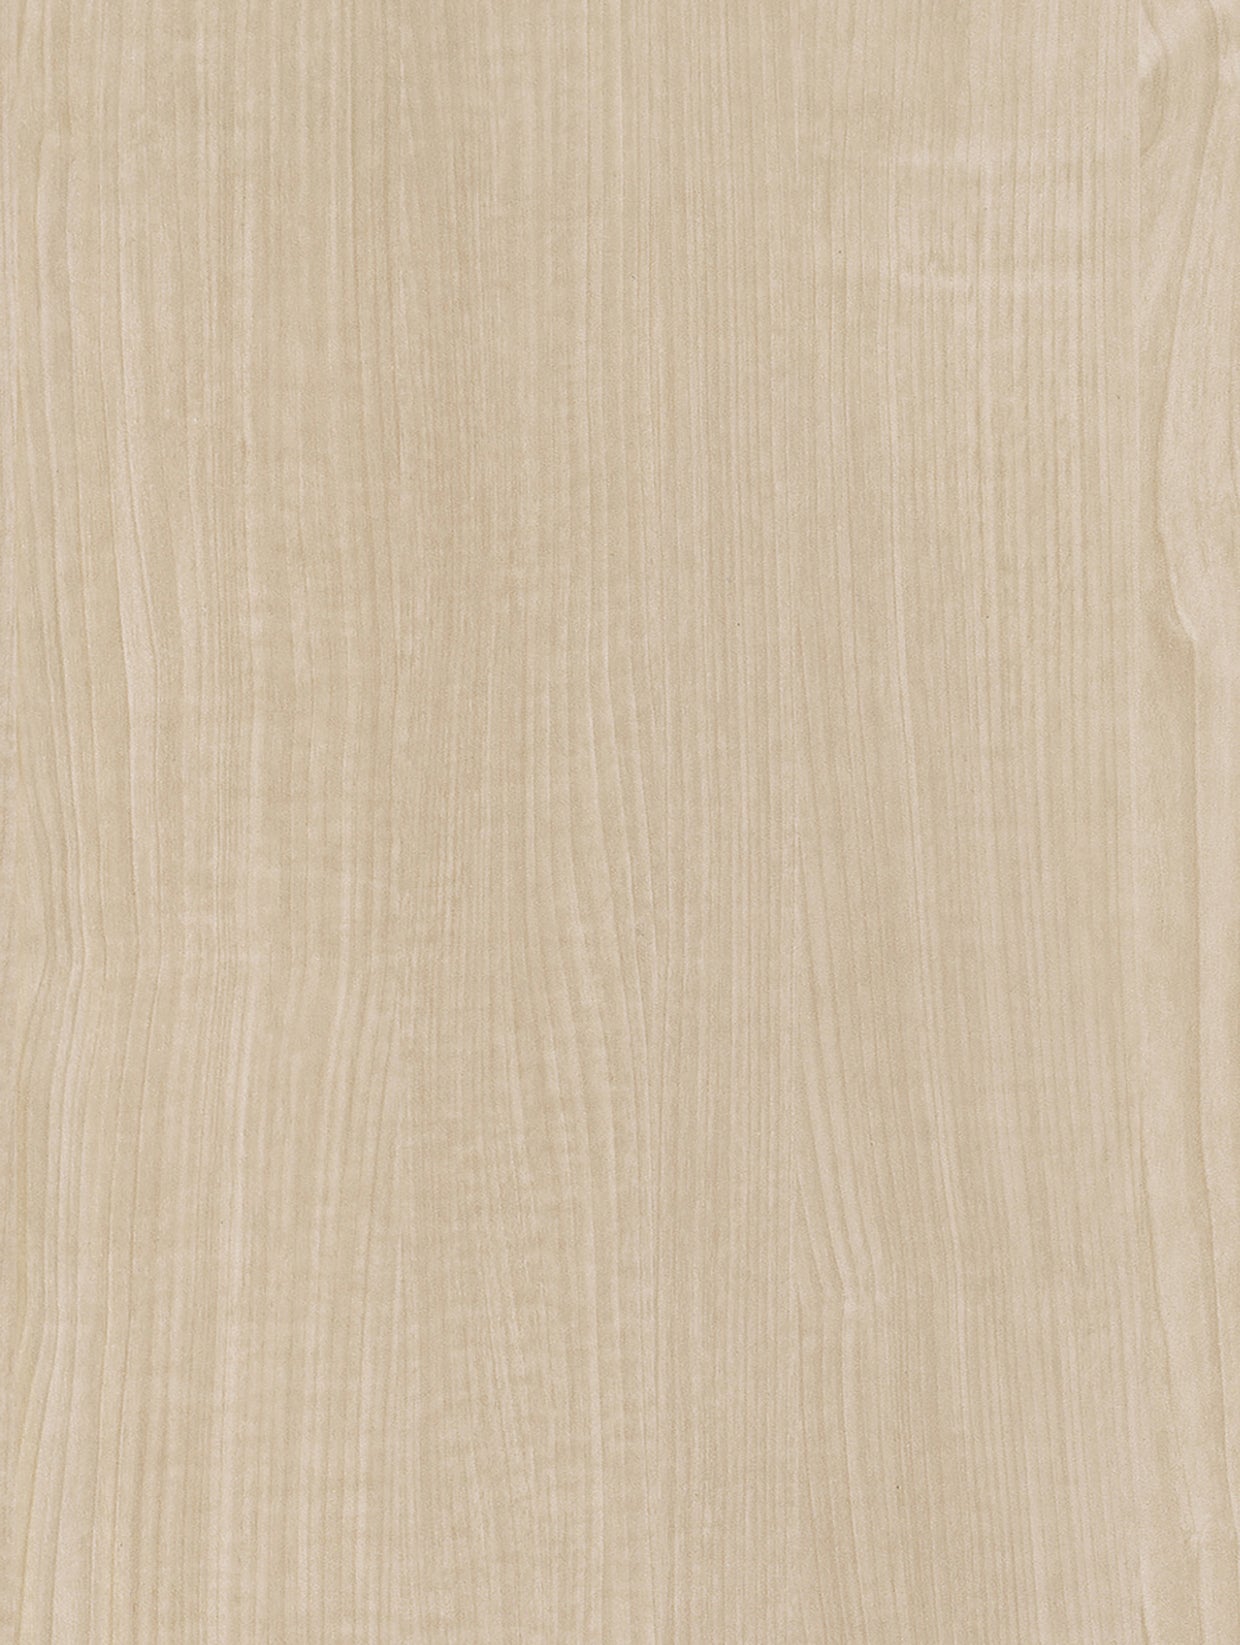 Wood-Light | Holzdekor Hell Rost/Soft/Strukturiert Möbelfolie Selbstklebende Tapete Vinyl Folie für Möbel Wand Regal (100x122cm)